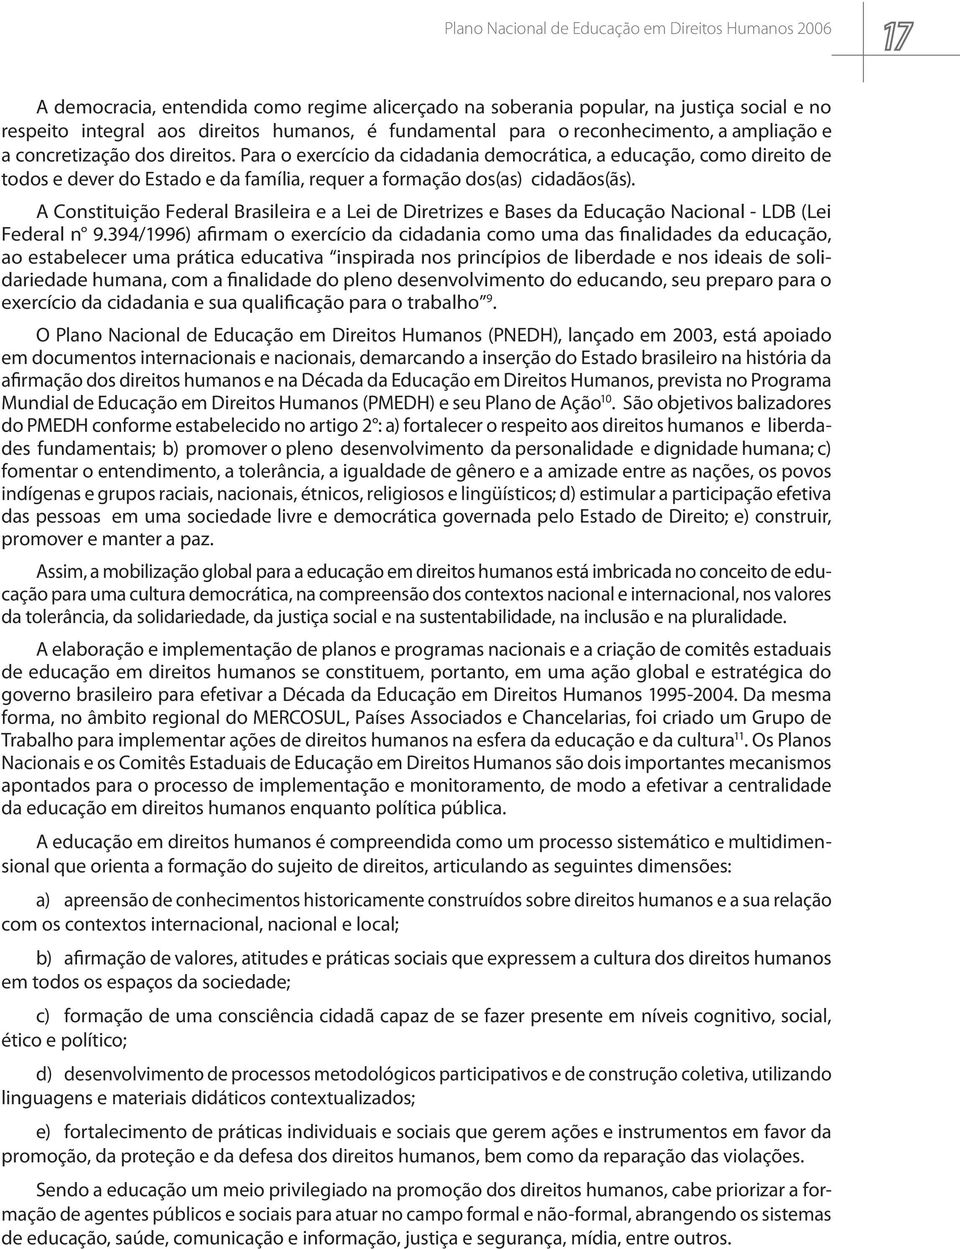 A Constituição Federal Brasileira e a Lei de Diretrizes e Bases da Educação Nacional - LDB (Lei Federal n 9.